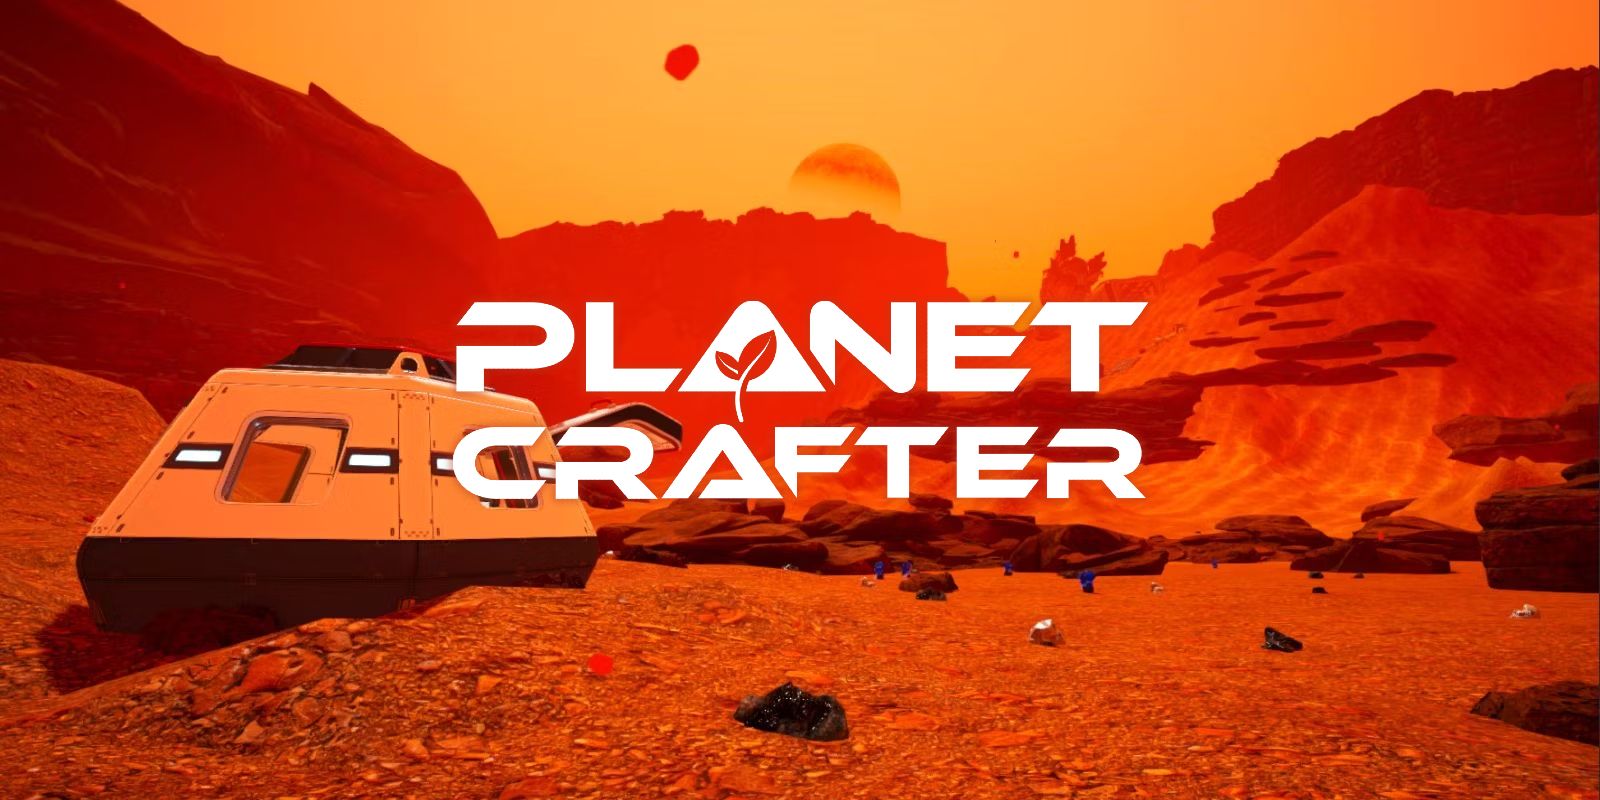 The Planet Crafter Review: “Una experiencia de terraformación inmersiva y gratificante”